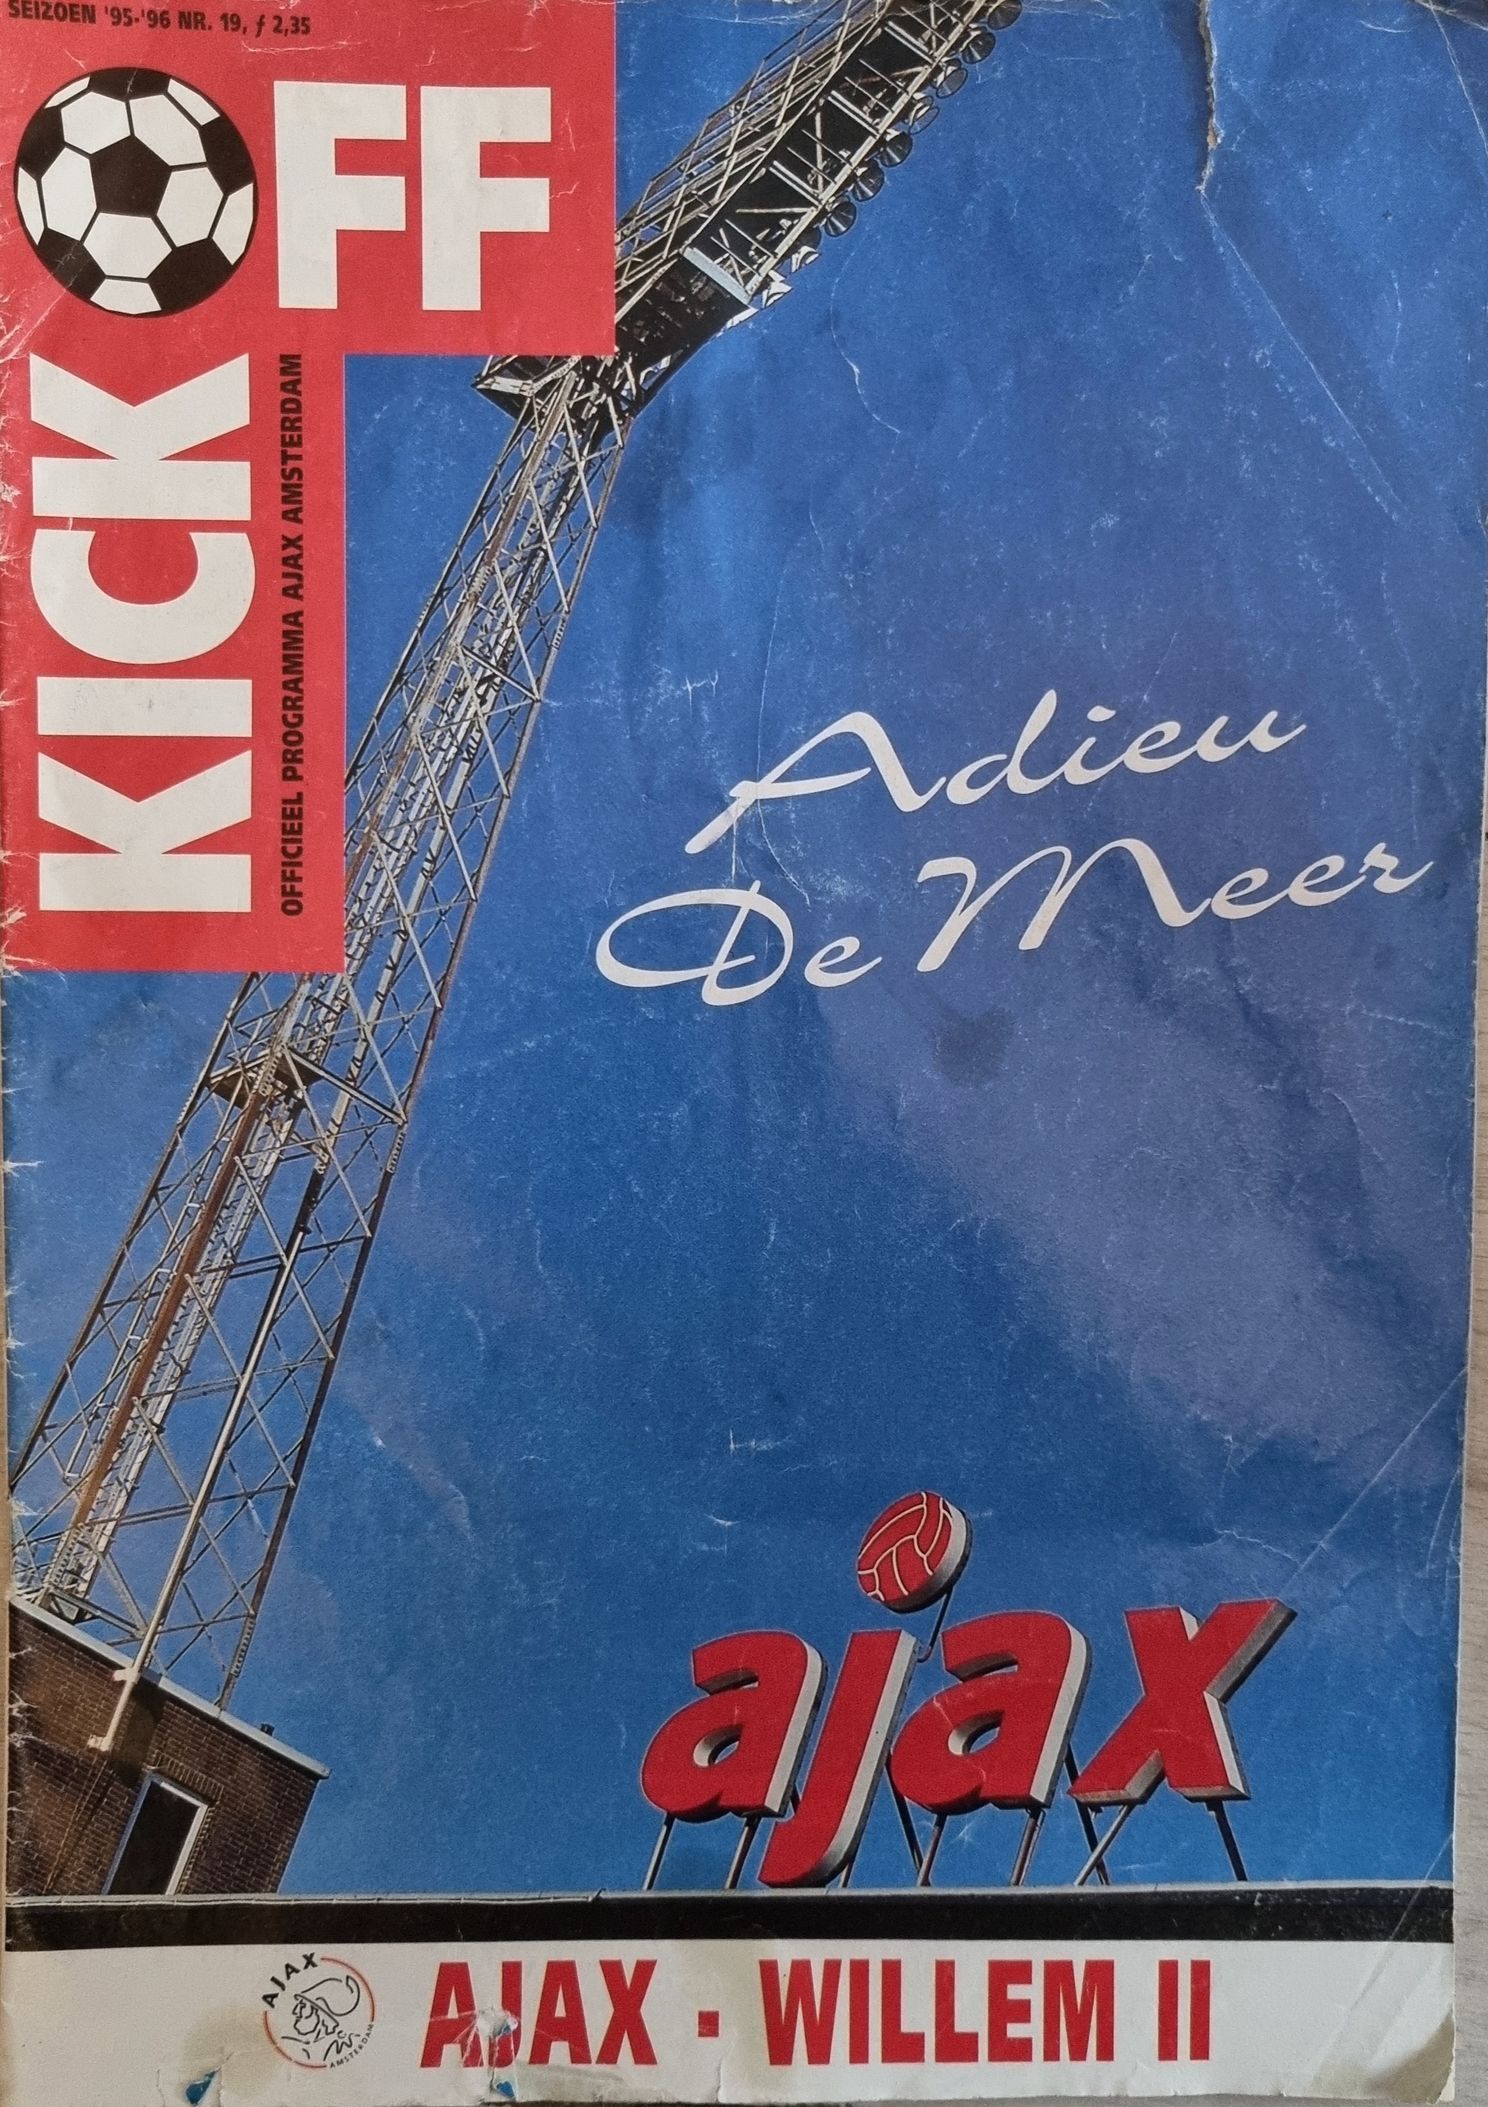 De Ajax Zolder: ‘Het afscheid van De Meer was best wel emotioneel voor veel supporters’